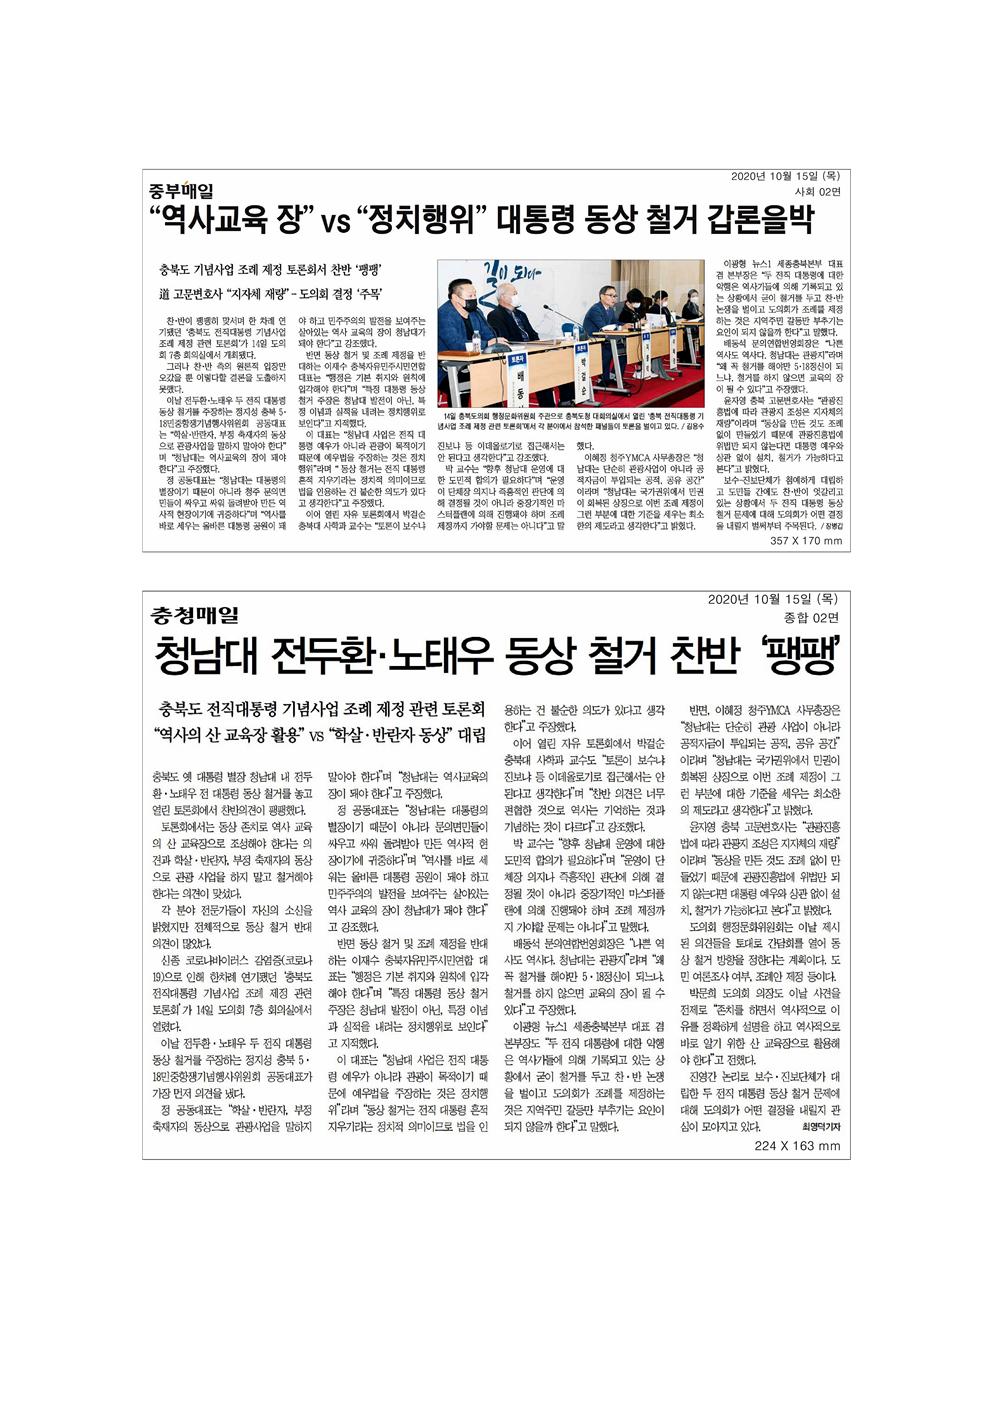 충청북도 전직대통령 기념사업 조례 관련 토론회 신문보도 - 1